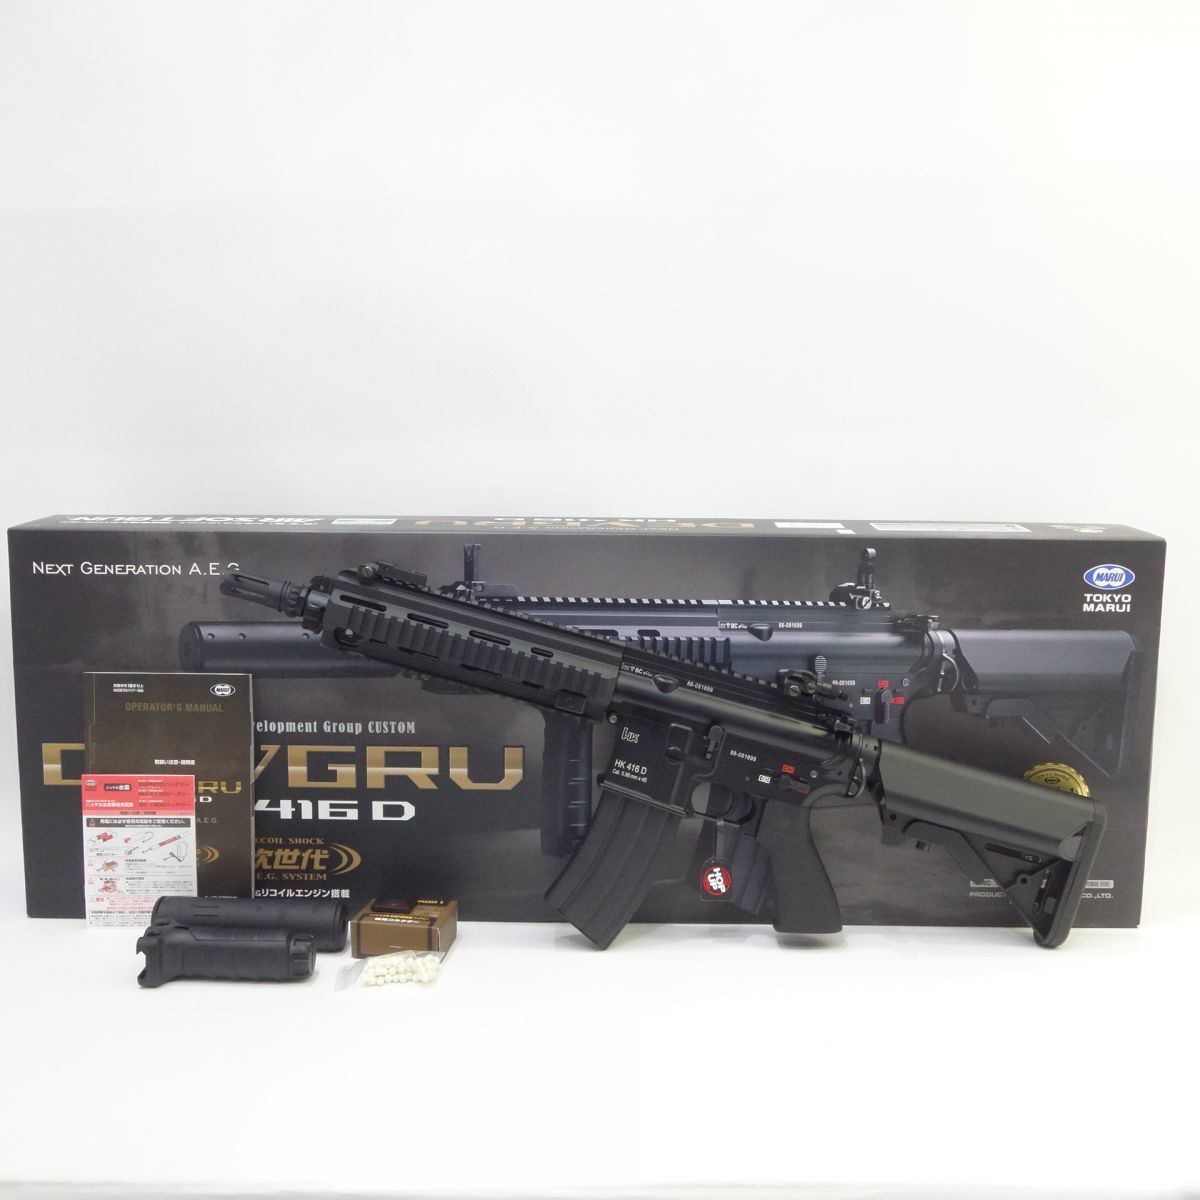 東京マルイ HK416D DEVGRUカスタム - トイガン